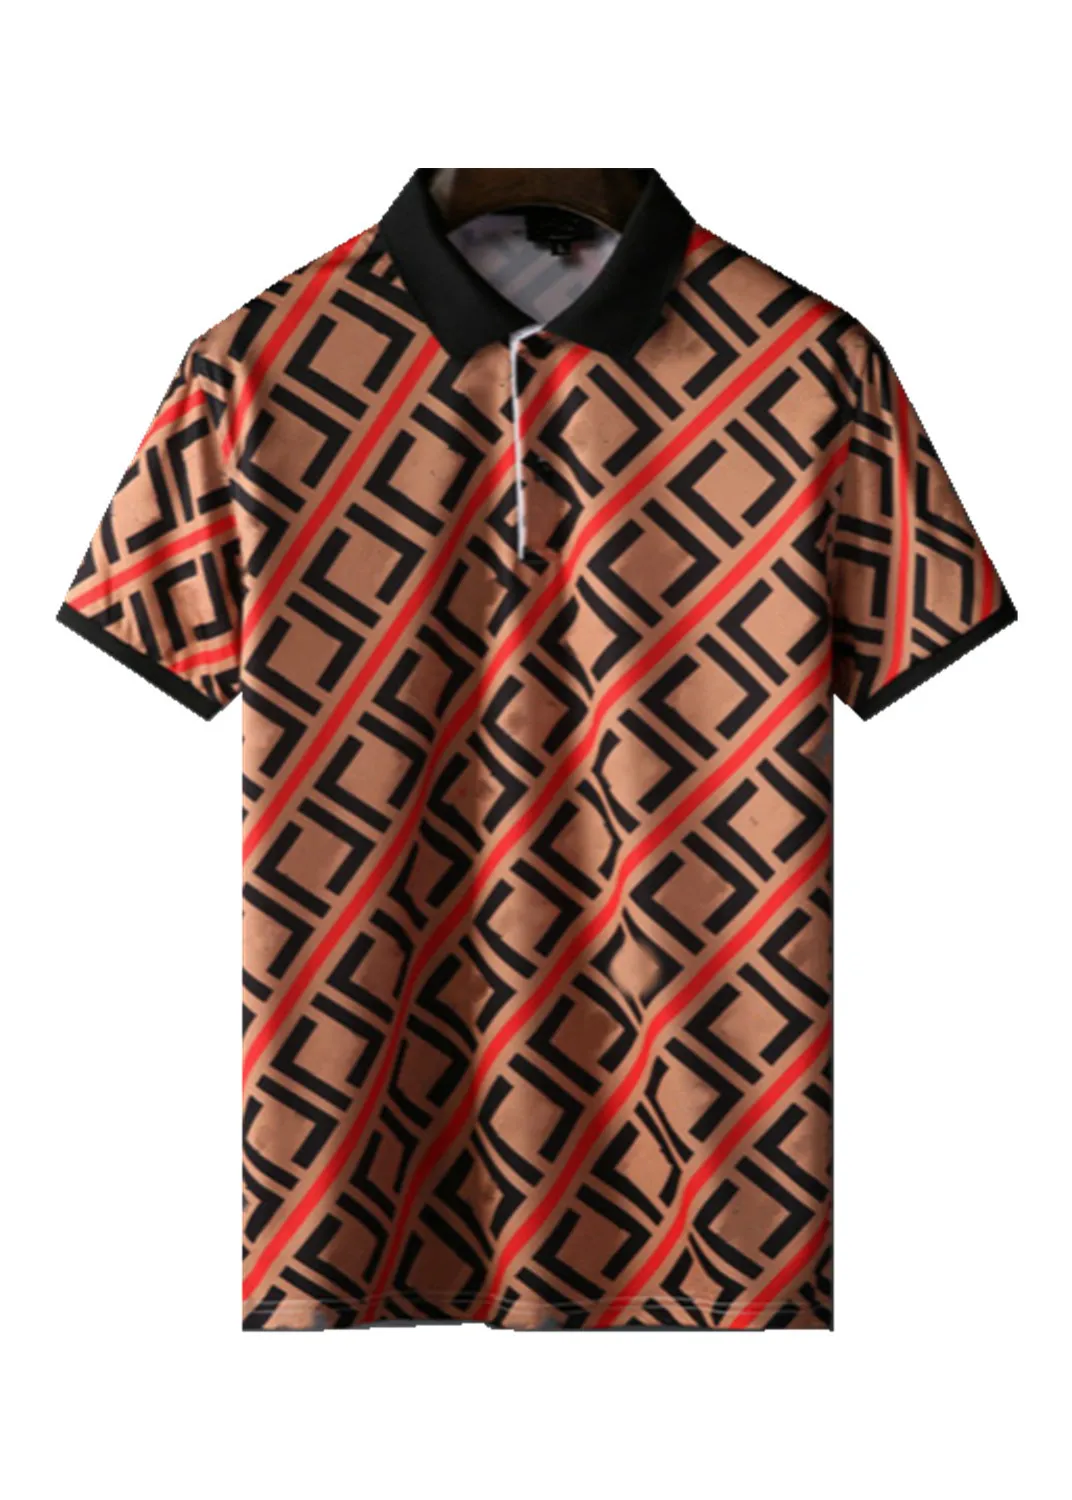 2022Luxury Casual męska koszulka oddychająca koszulka polo projektant koszulka z krótkim rękawem 100% bawełna wysokiej jakości hurtownia czarno-biały rozmiar M-3XL # ZO35